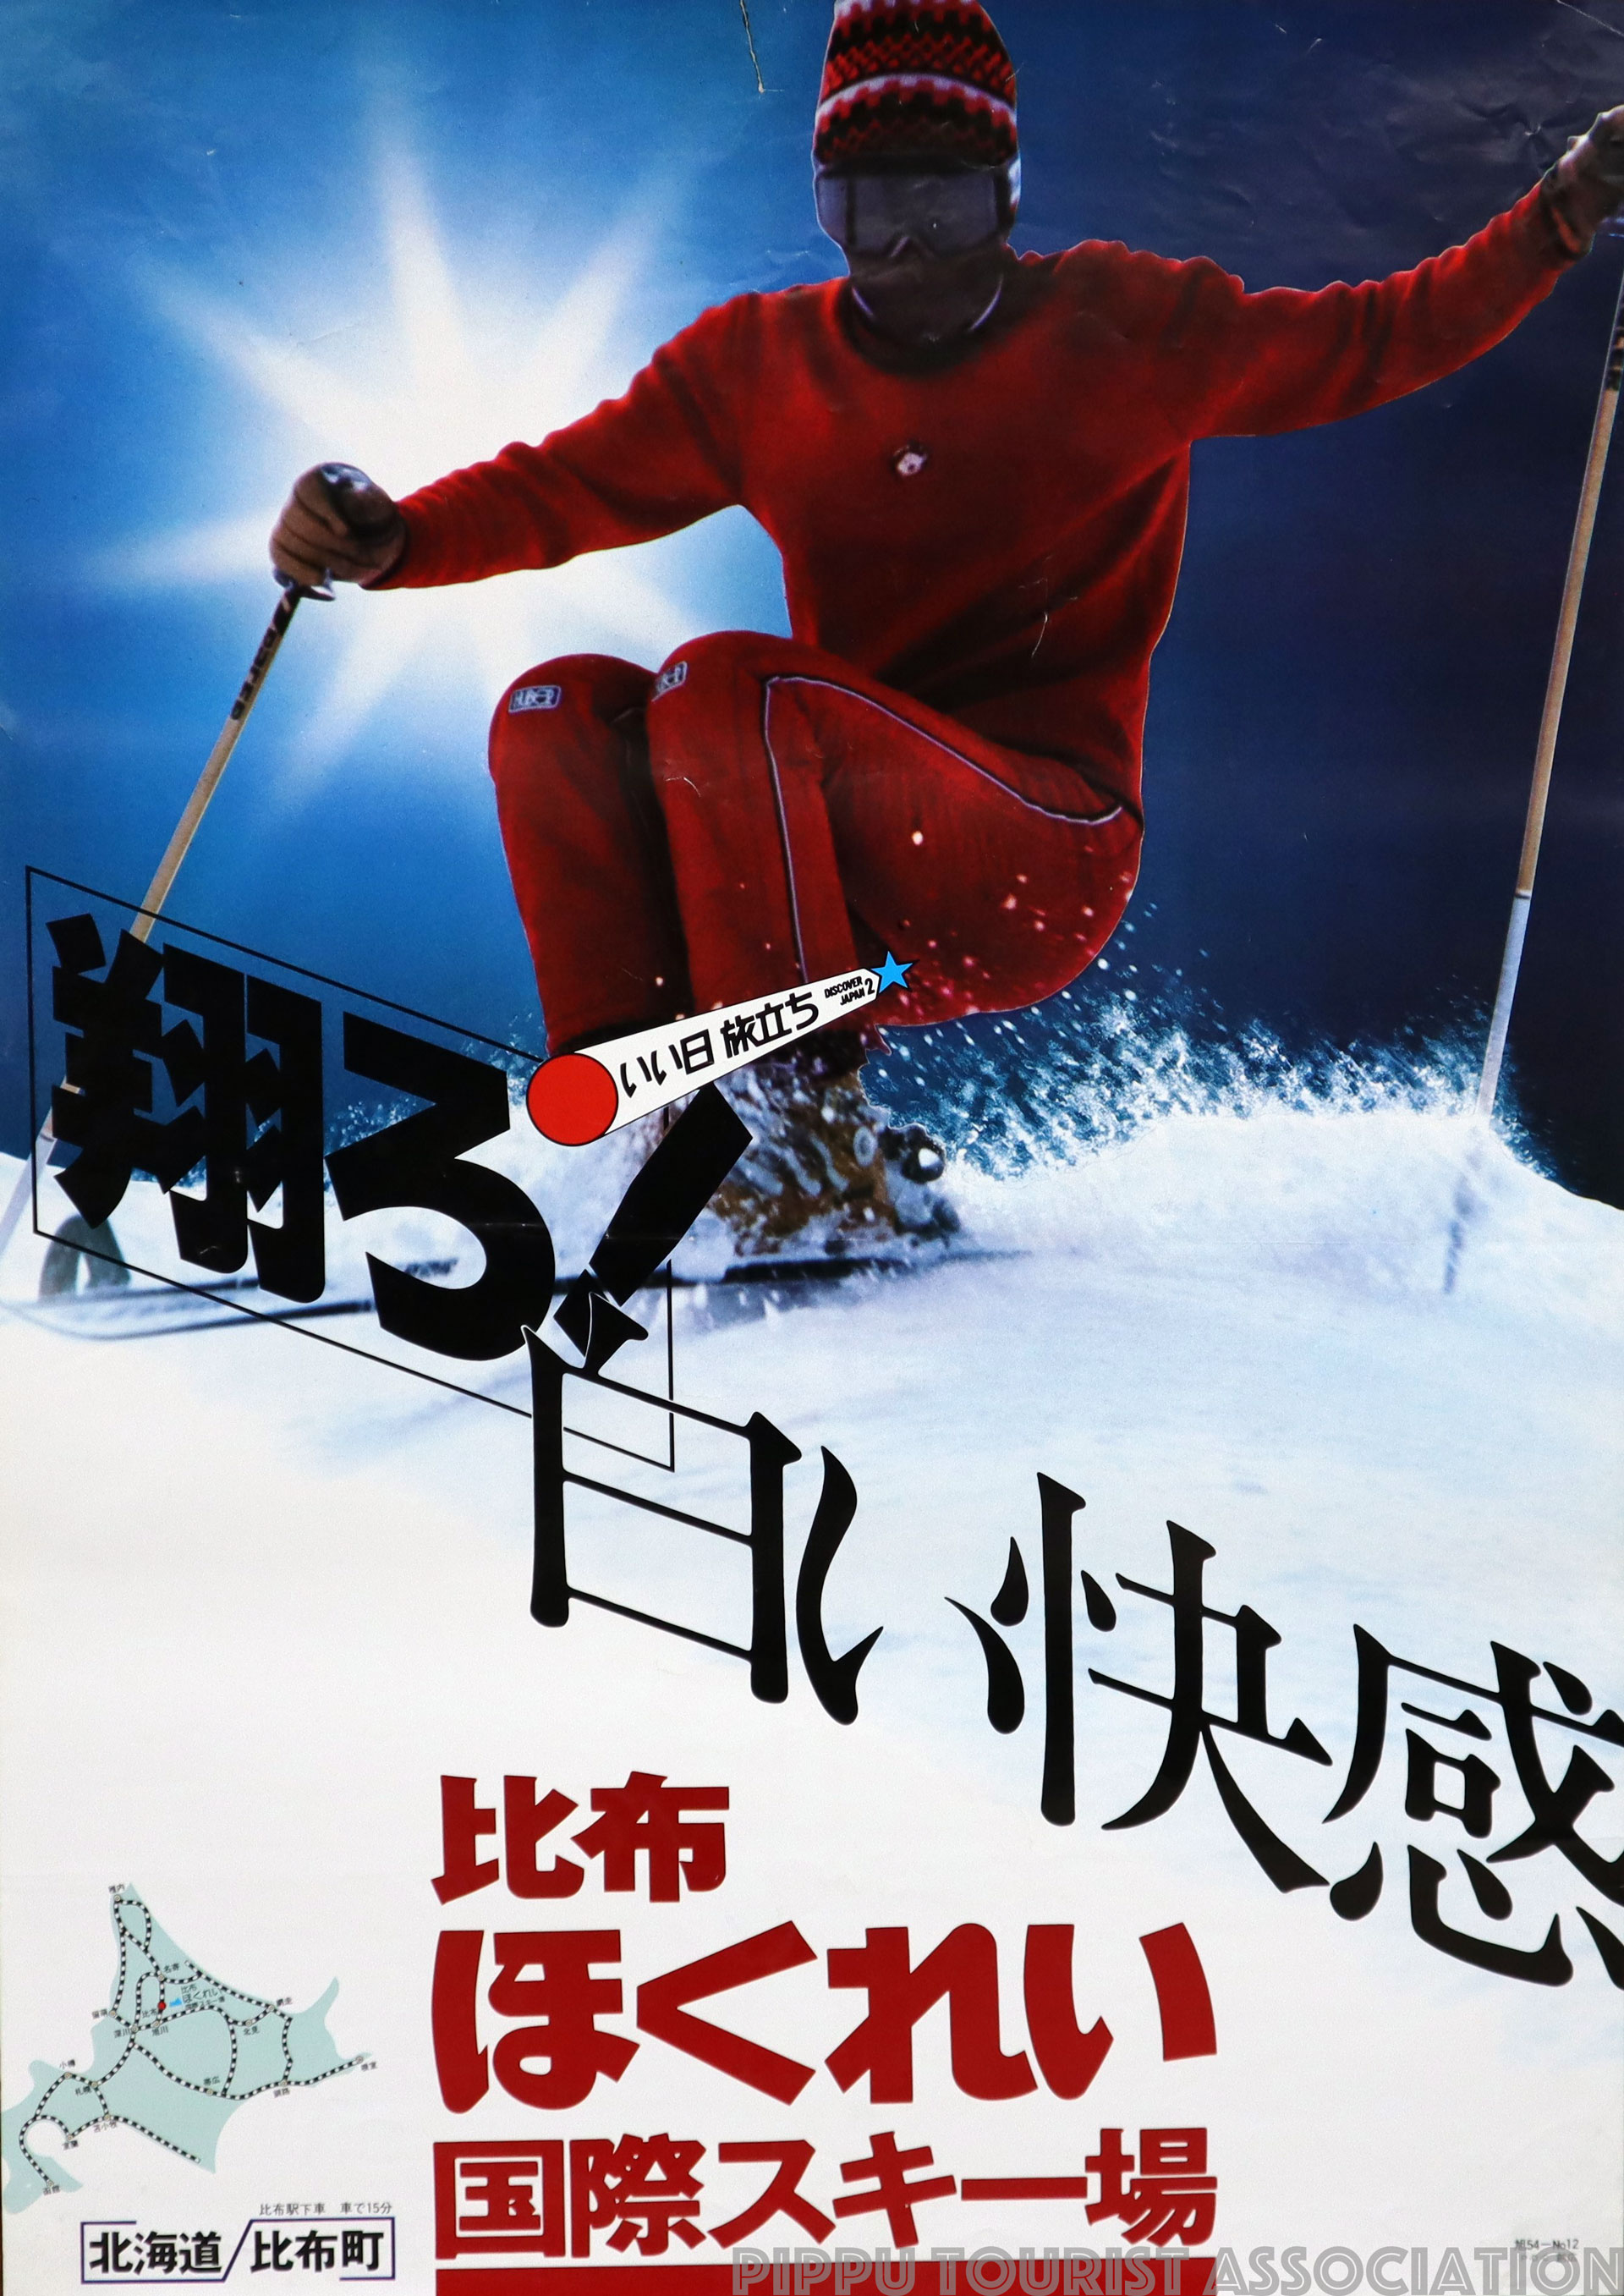 昭和54年比布ほくれい国際スキー場